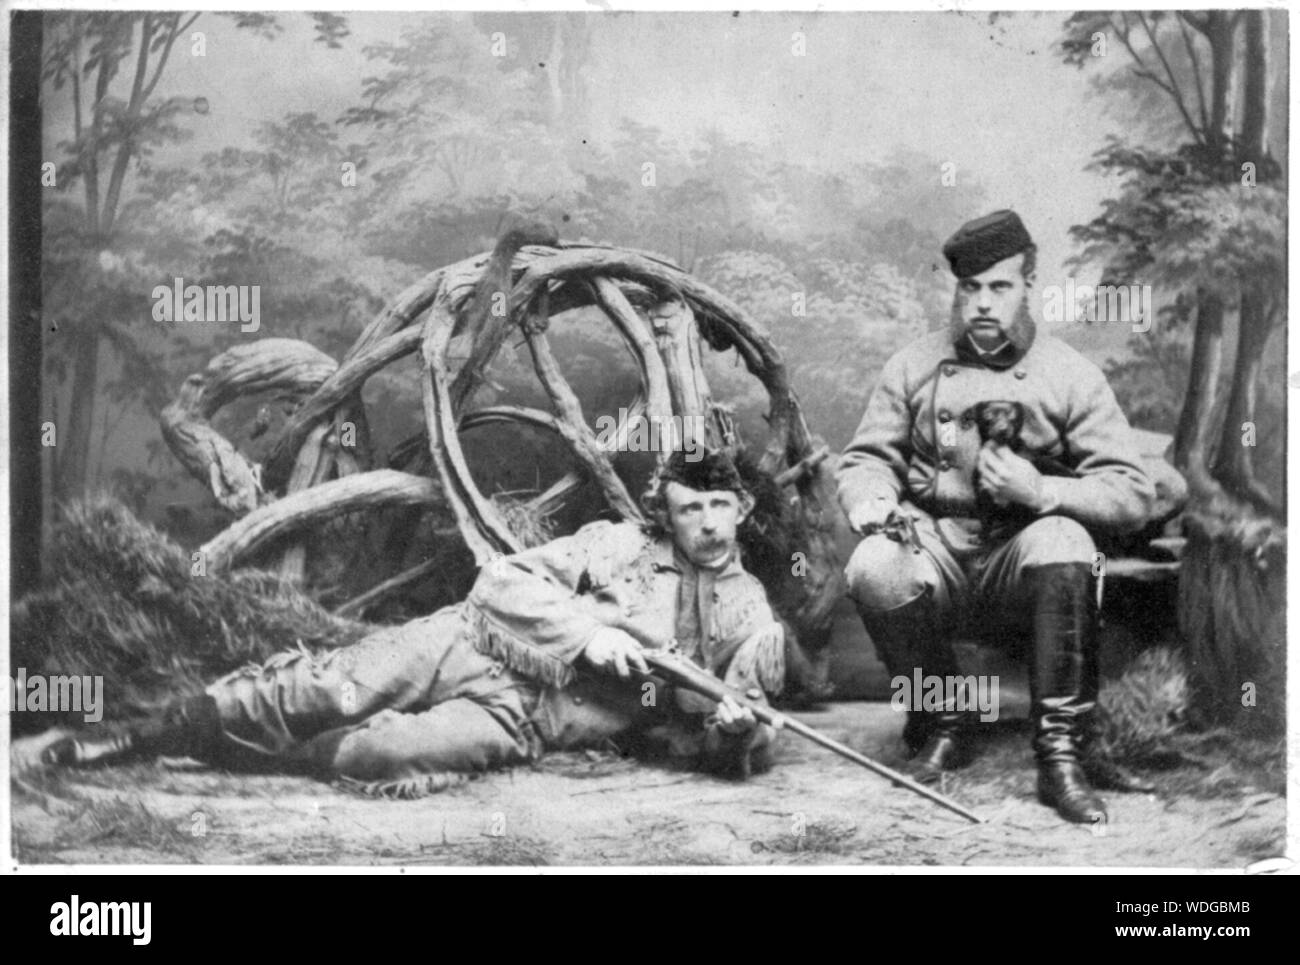 George Armstrong Custer, liegend in hirschleder Jagd Outfit mit Gewehr, Großherzog Alexis sitzt neben ihm Holding Welpen Stockfoto